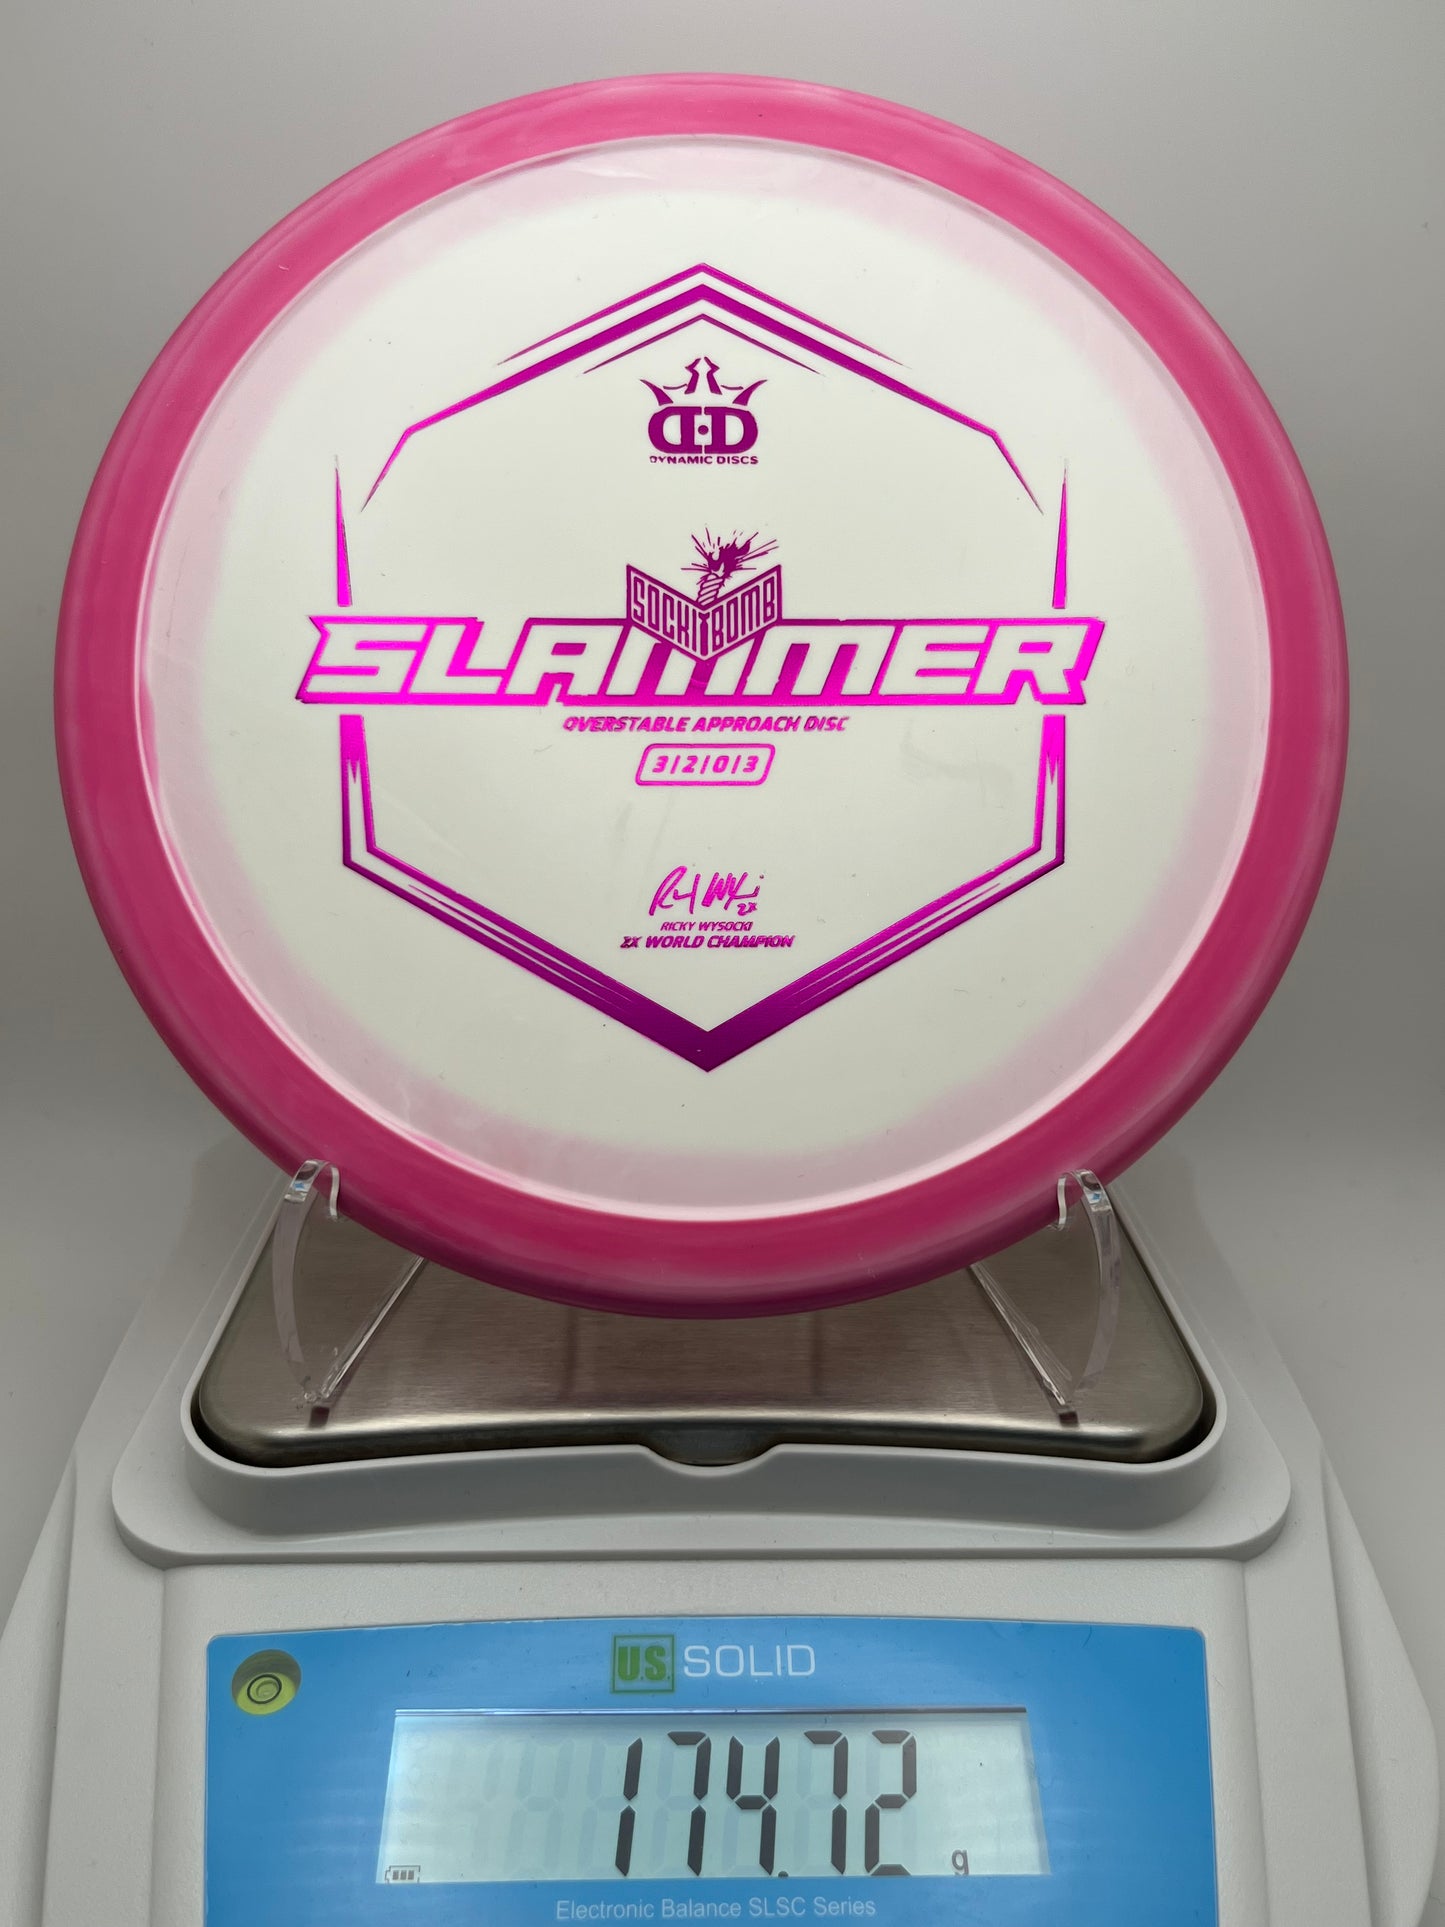 Dynamic Discs Classic Supreme Orbit Sockibomb Slammer Ignite Stamp V2